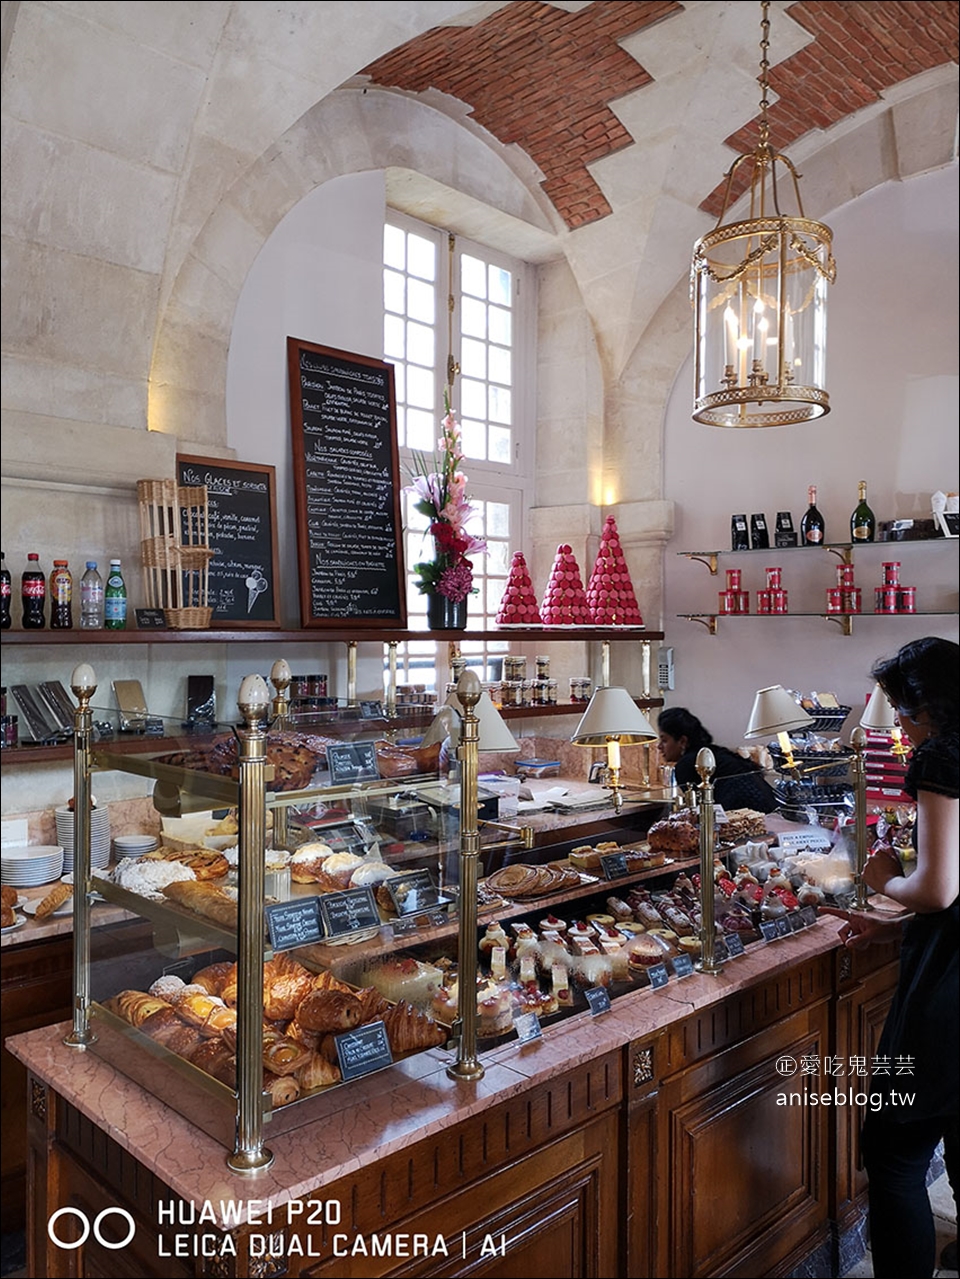 巴黎美食 | Carette，超夯巴黎傳統老咖啡廳，我是為了聖多諾黑泡芙來的！